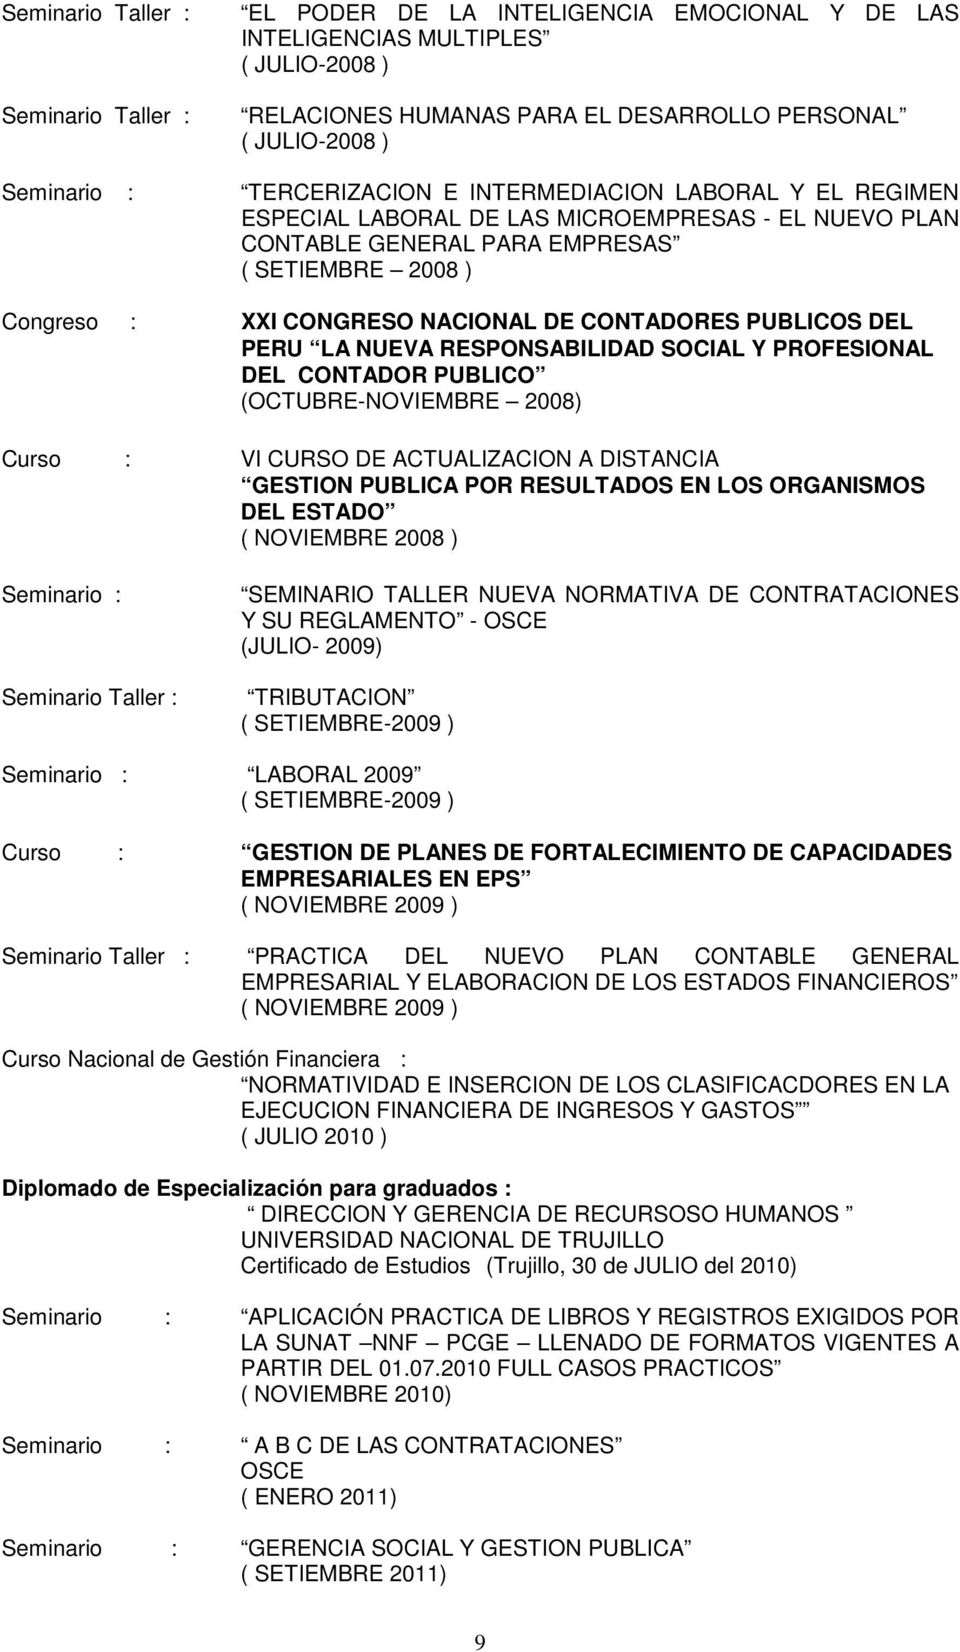 DEL PERU LA NUEVA RESPONSABILIDAD SOCIAL Y PROFESIONAL DEL CONTADOR PUBLICO (OCTUBRE-NOVIEMBRE 2008) Curso : VI CURSO DE ACTUALIZACION A DISTANCIA GESTION PUBLICA POR RESULTADOS EN LOS ORGANISMOS DEL